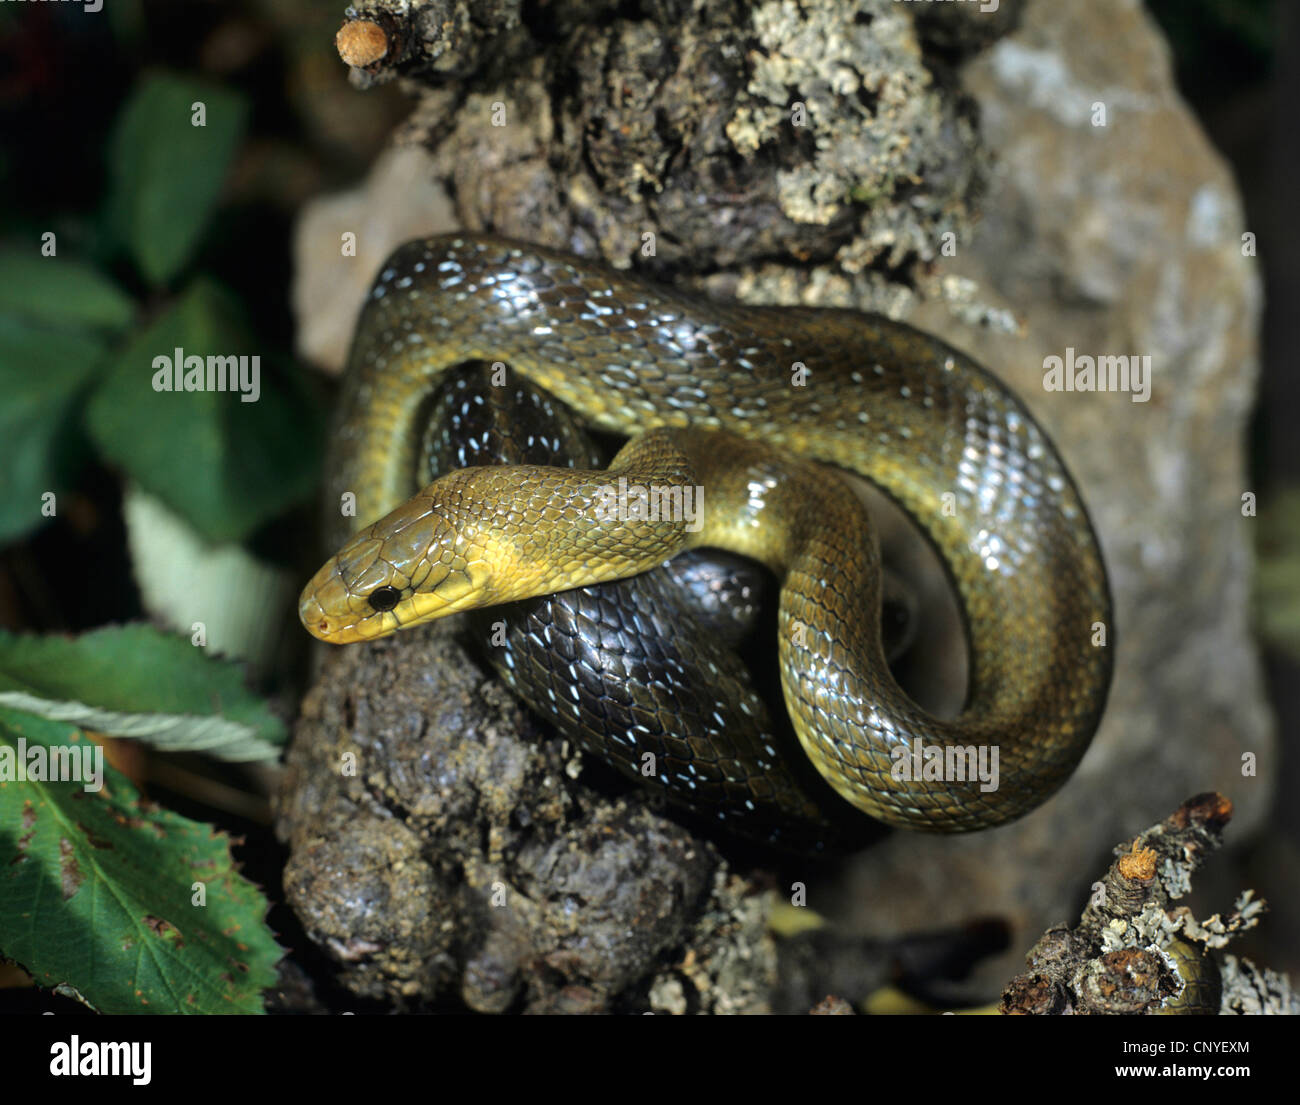 Aesculapian snake (Elaphe longissima, Zamenis longissimus), resting on a rock, Germany Stock Photo